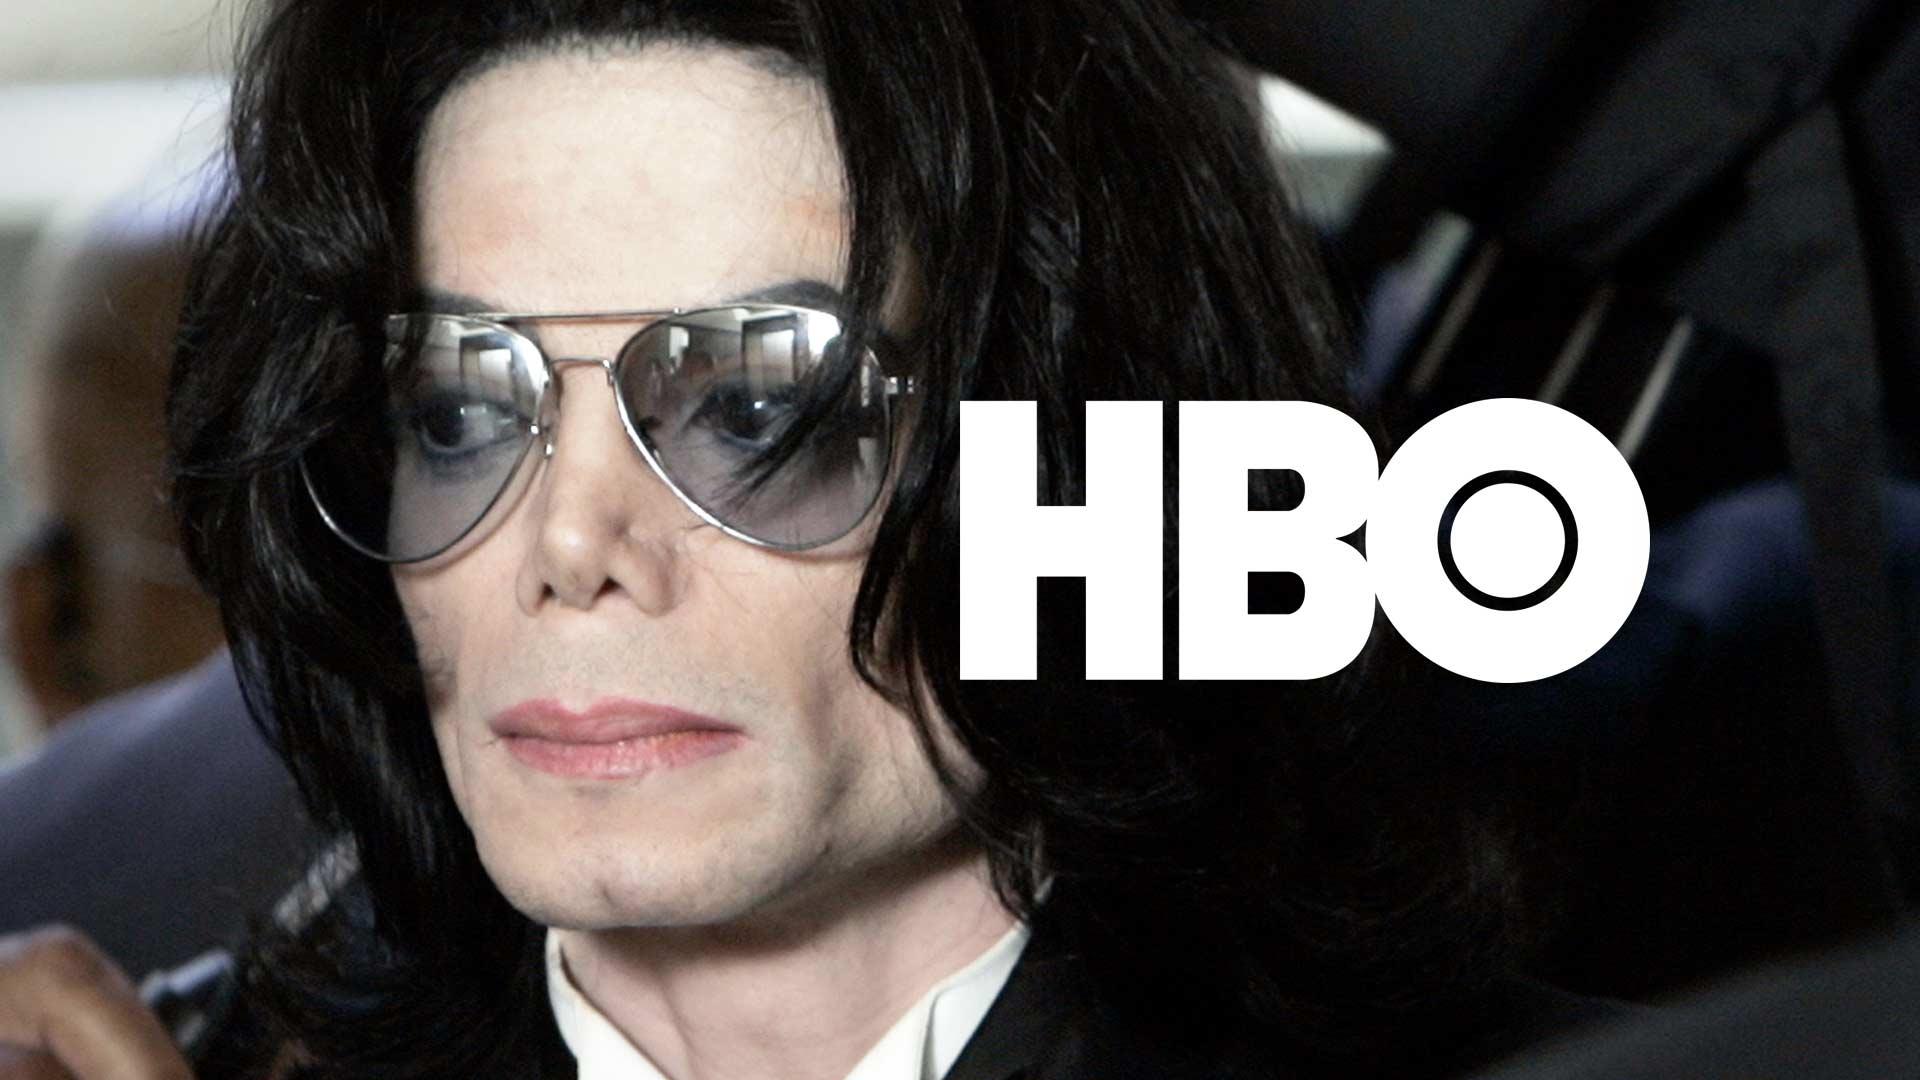 Michael Jackson Estate Files $100 Million Lawsuit Against HBO Over ‘Leaving Neverland’ Documentary